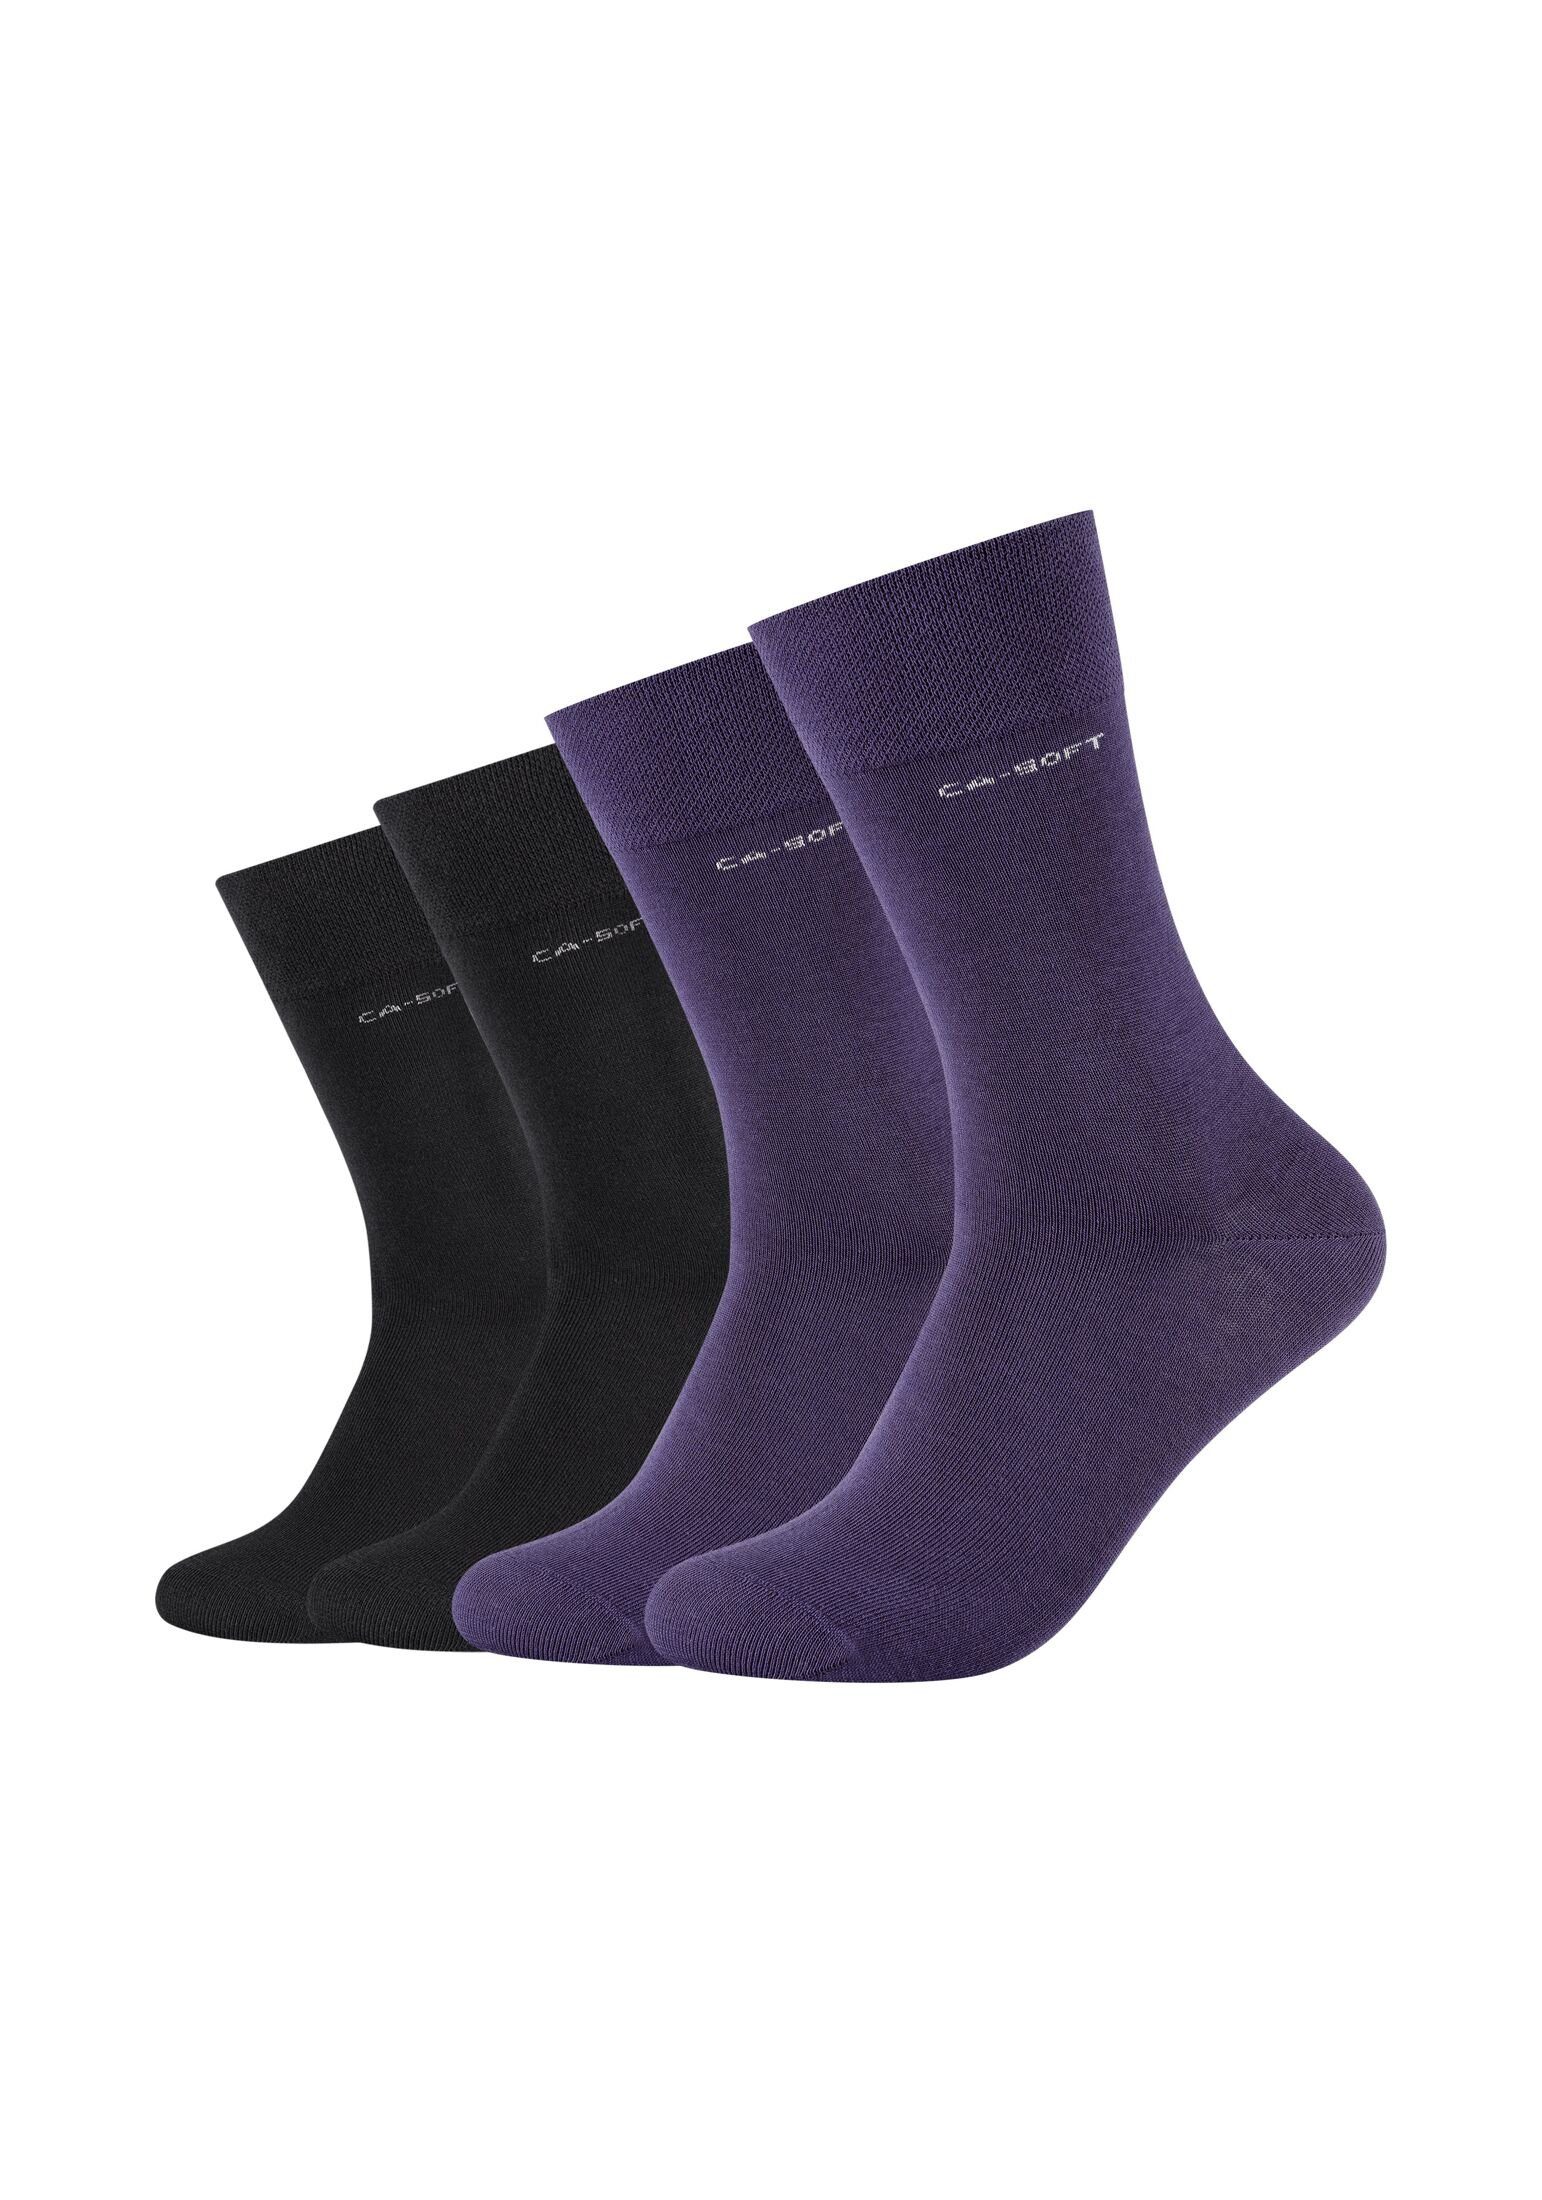 Camano Socken Socken für Damen und Herren Businesssocken Komfortbund Bequem mulberry purple